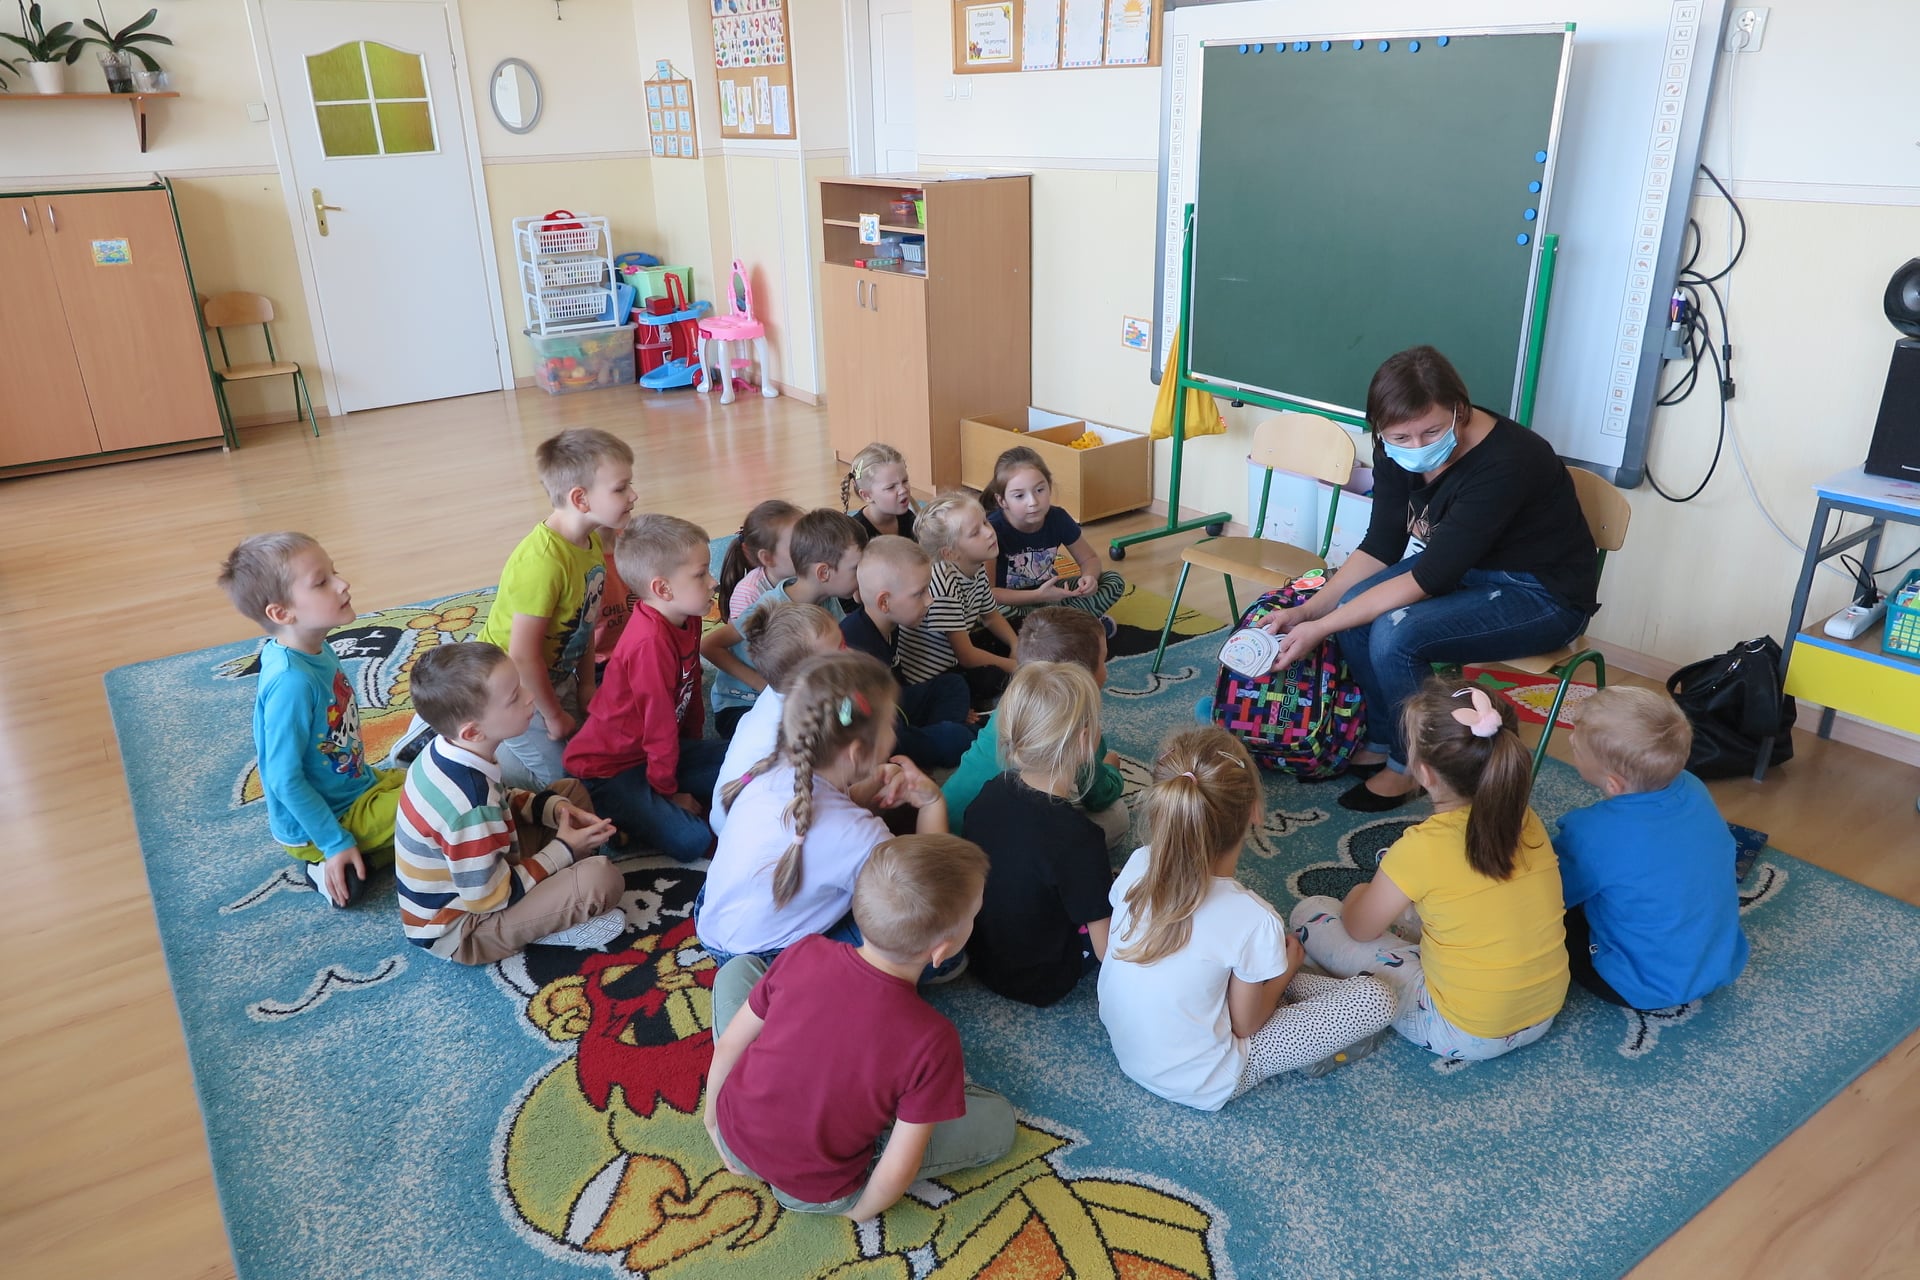 sala w przedszkolu, na dywanie na podłodze podłodze siedzi 17 dzieci, bibliotekarka siedzi na krześle trzymając w rekach biblioplecek